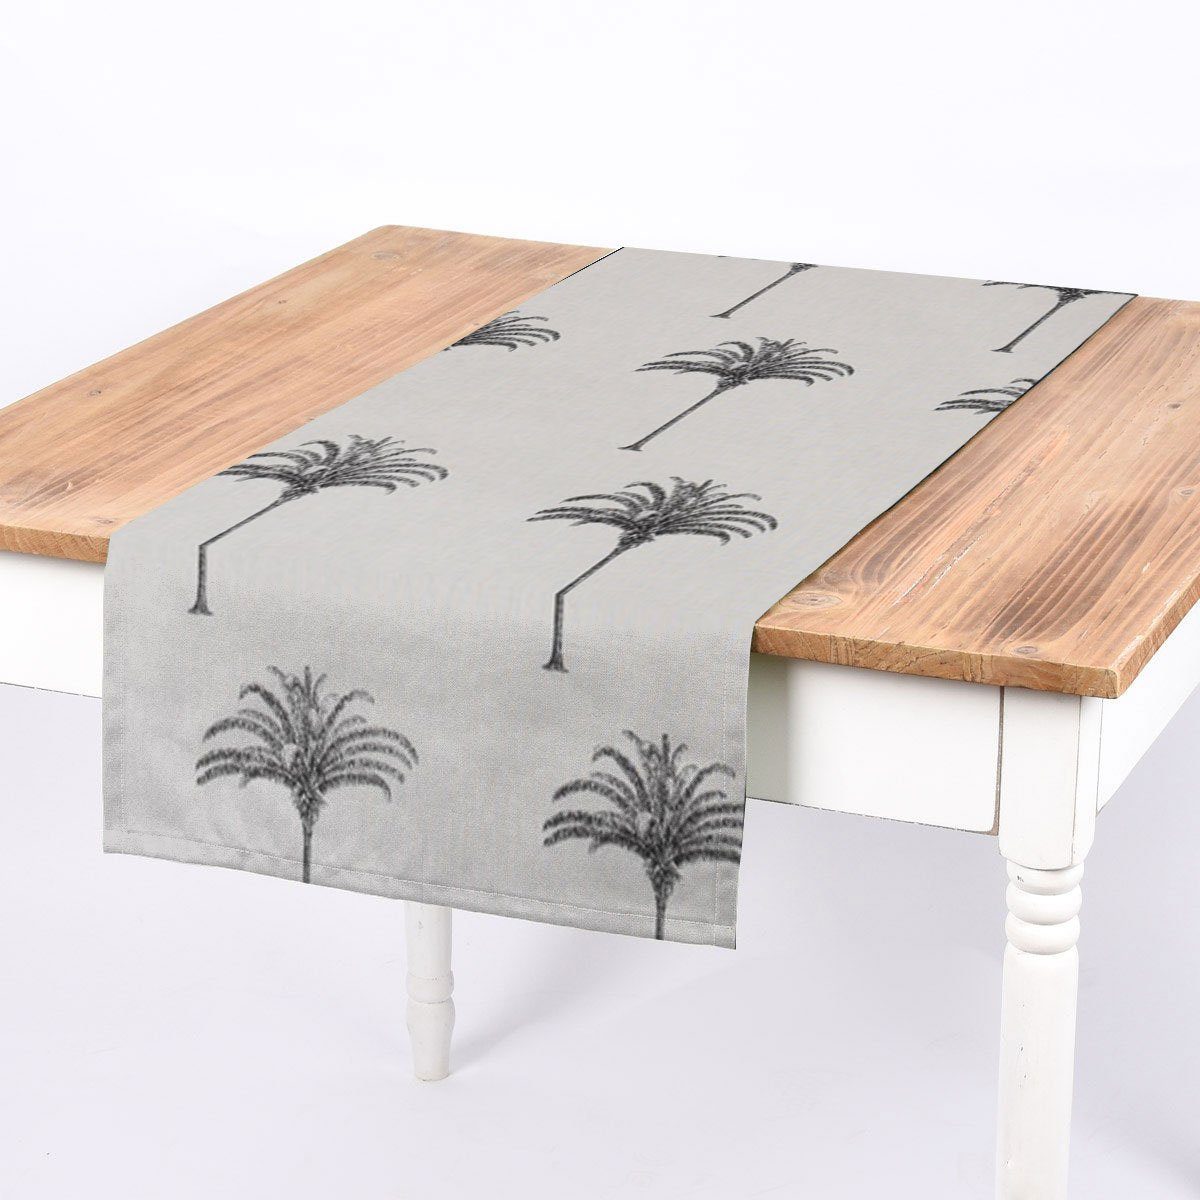 SCHÖNER LEBEN. Tischläufer SCHÖNER LEBEN. Tischläufer Palmen Botanik Tropical ecru schwarz, handmade | Tischläufer